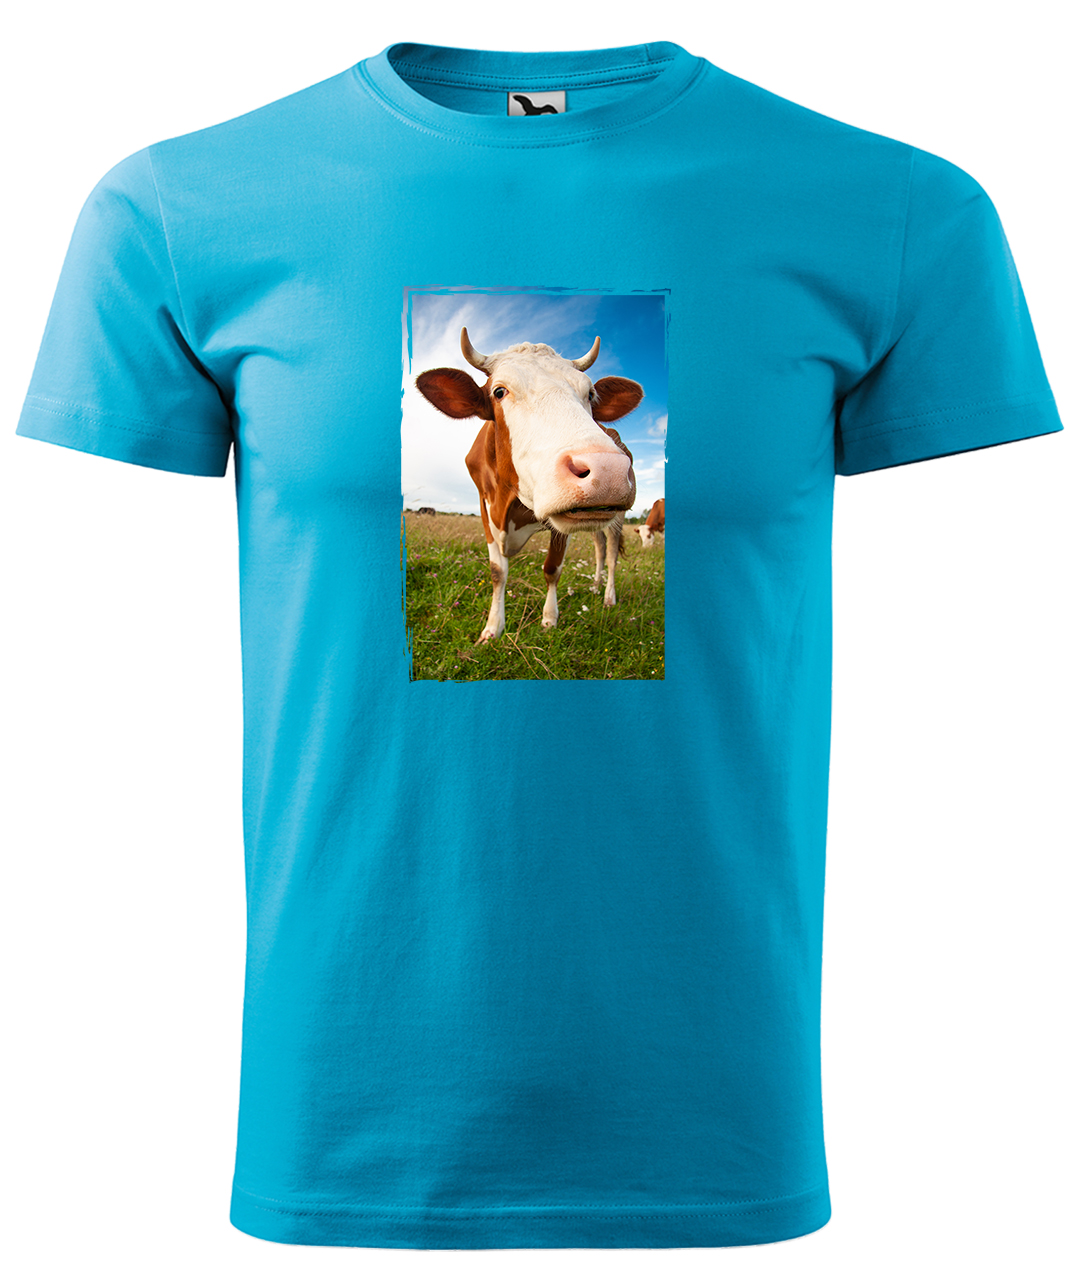 Dětské tričko s krávou - Na pastvě Velikost: 8 let / 134 cm, Barva: Tyrkysová (44), Délka rukávu: Krátký rukáv